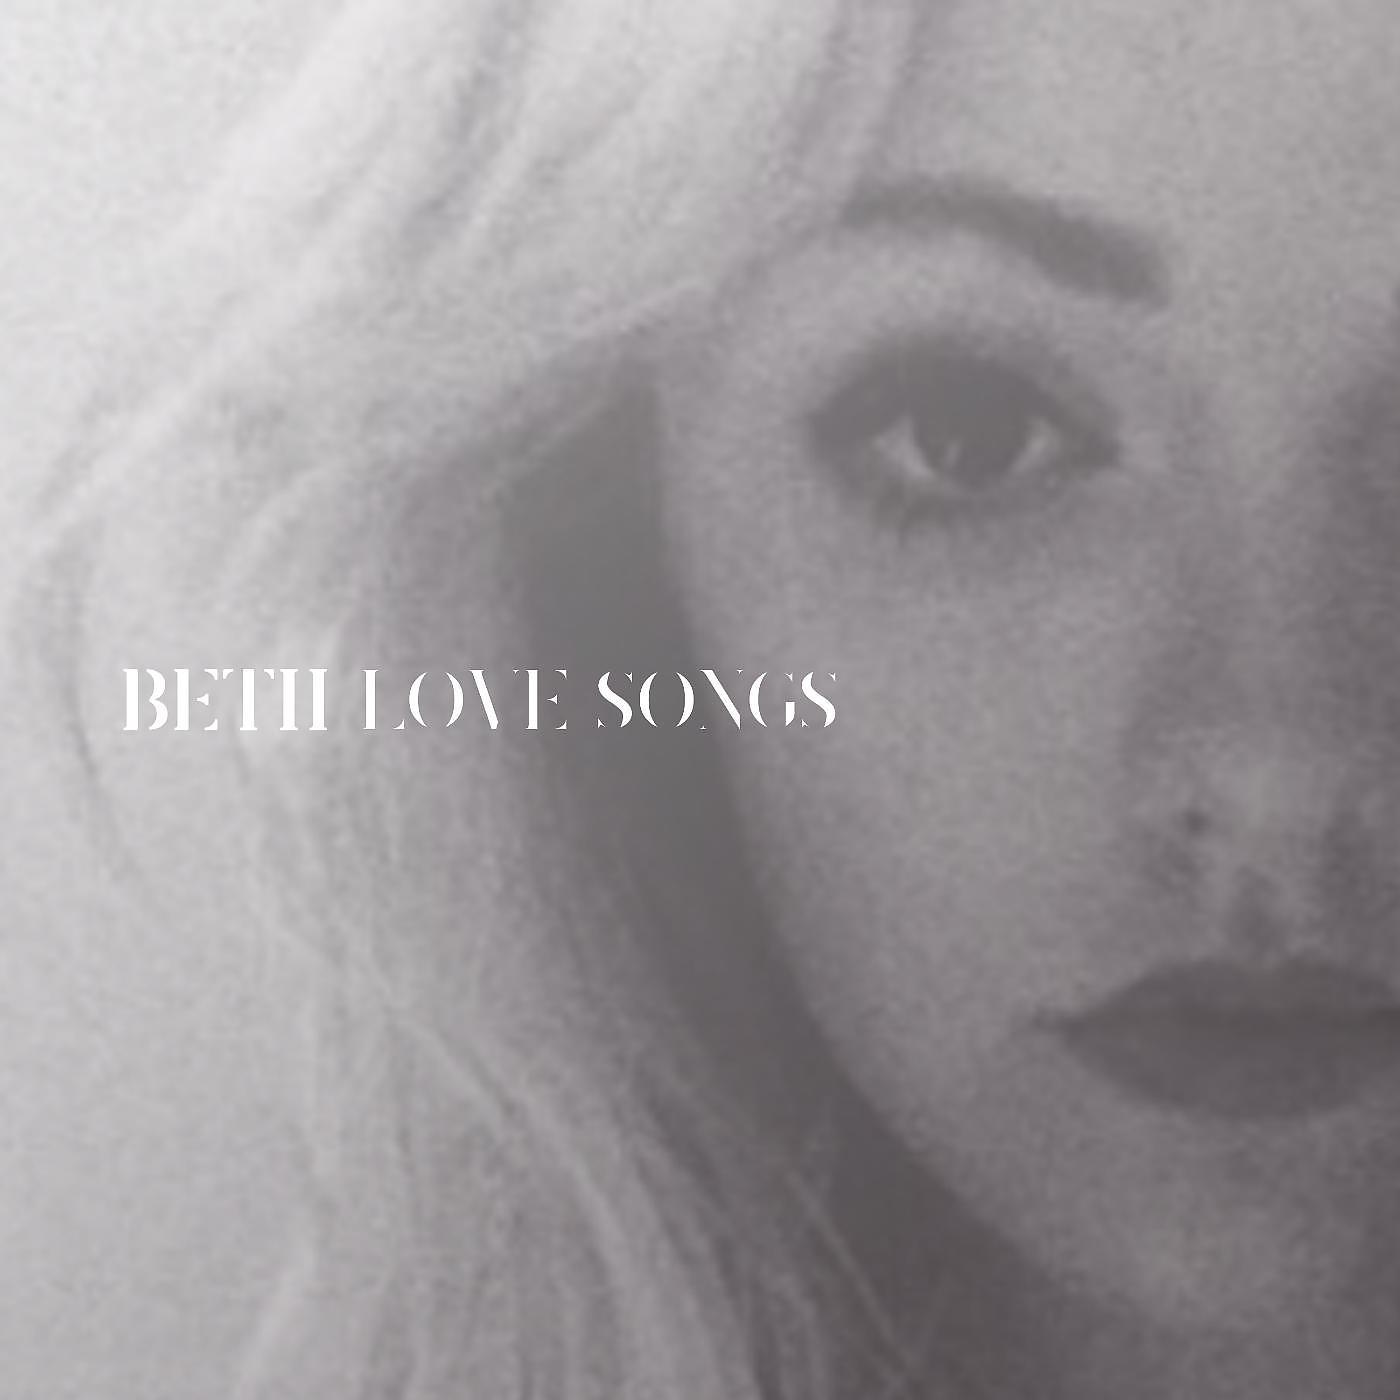 I love beth. Beth Wildest Dreams. She Wolf Beth. Beth don't you worry child. Beth (песня).